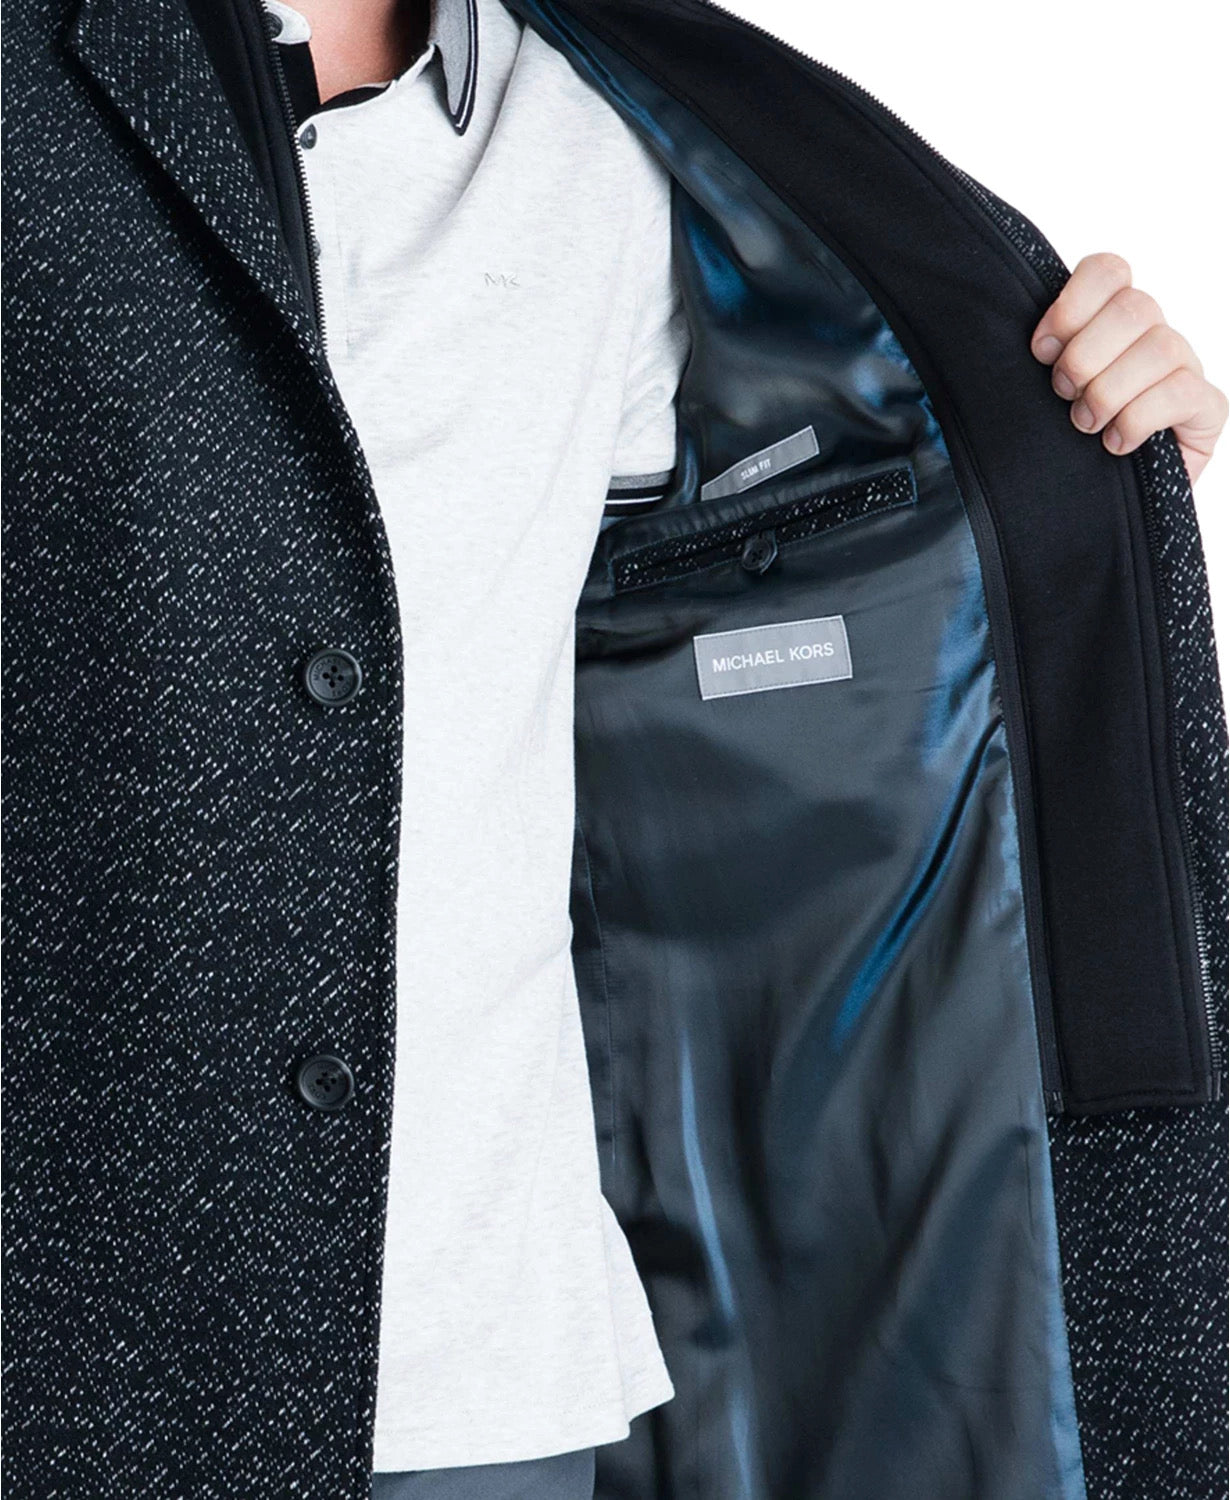 Michael Kors Men's Pike Slim Fit Top Coat 46R Black / White Overcoat